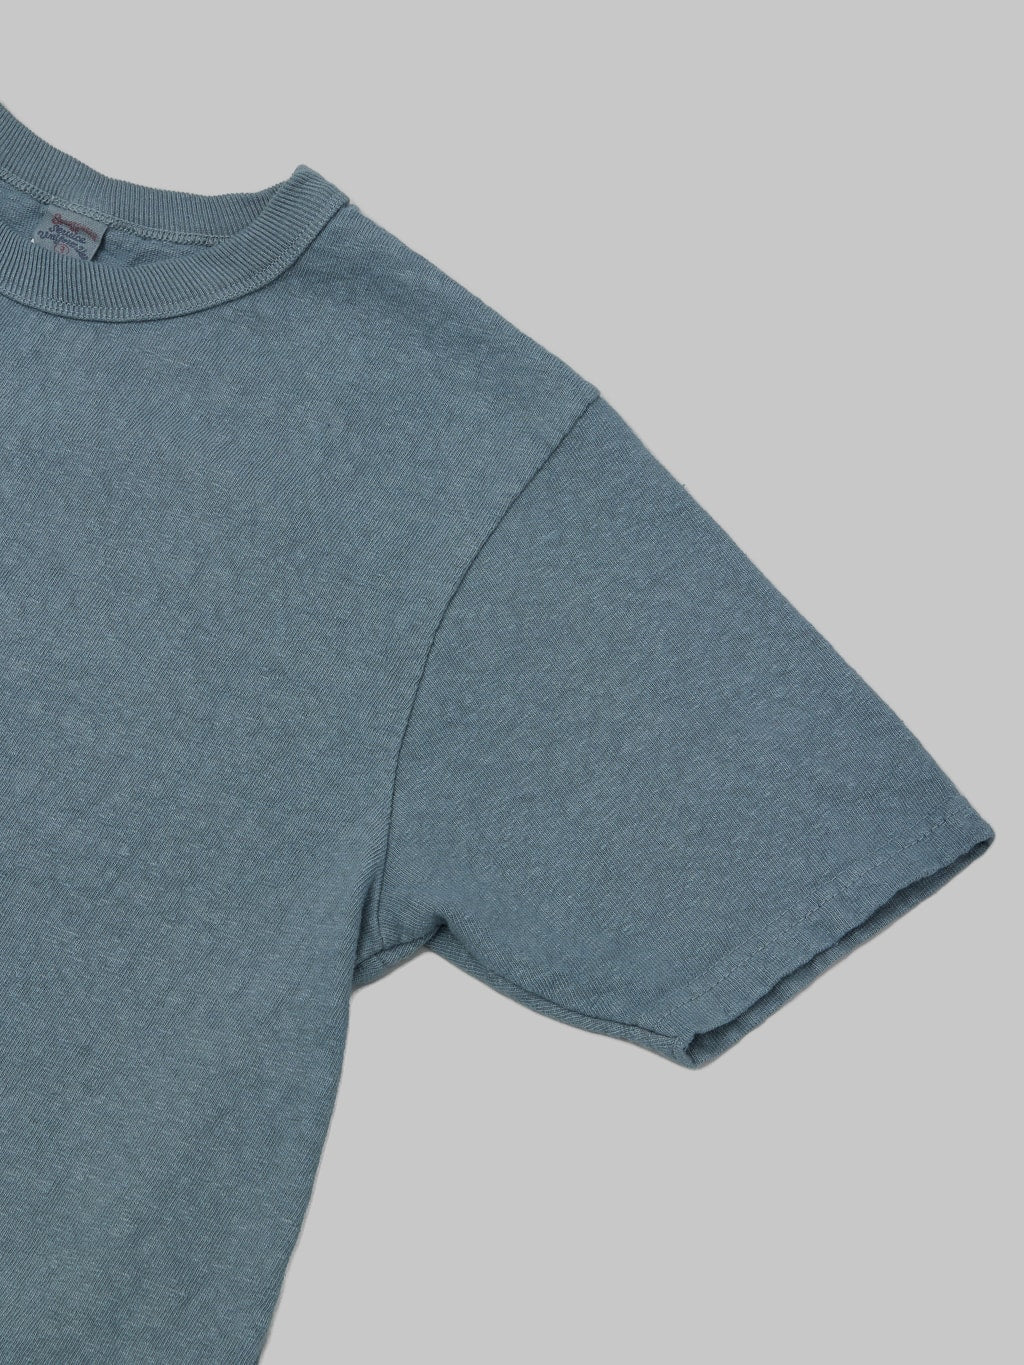 UES No 8 Slub Nep Short Sleeve Tshirt Grey 100 cotton